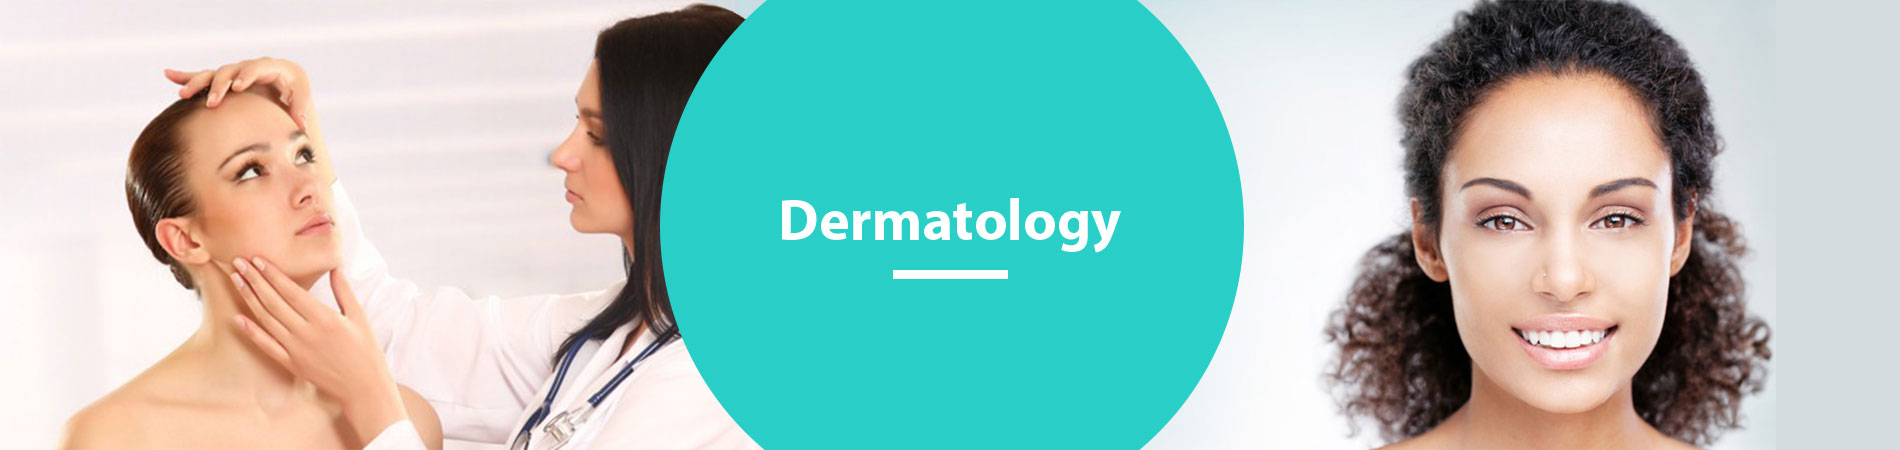 SV banner Dermatology.jpg